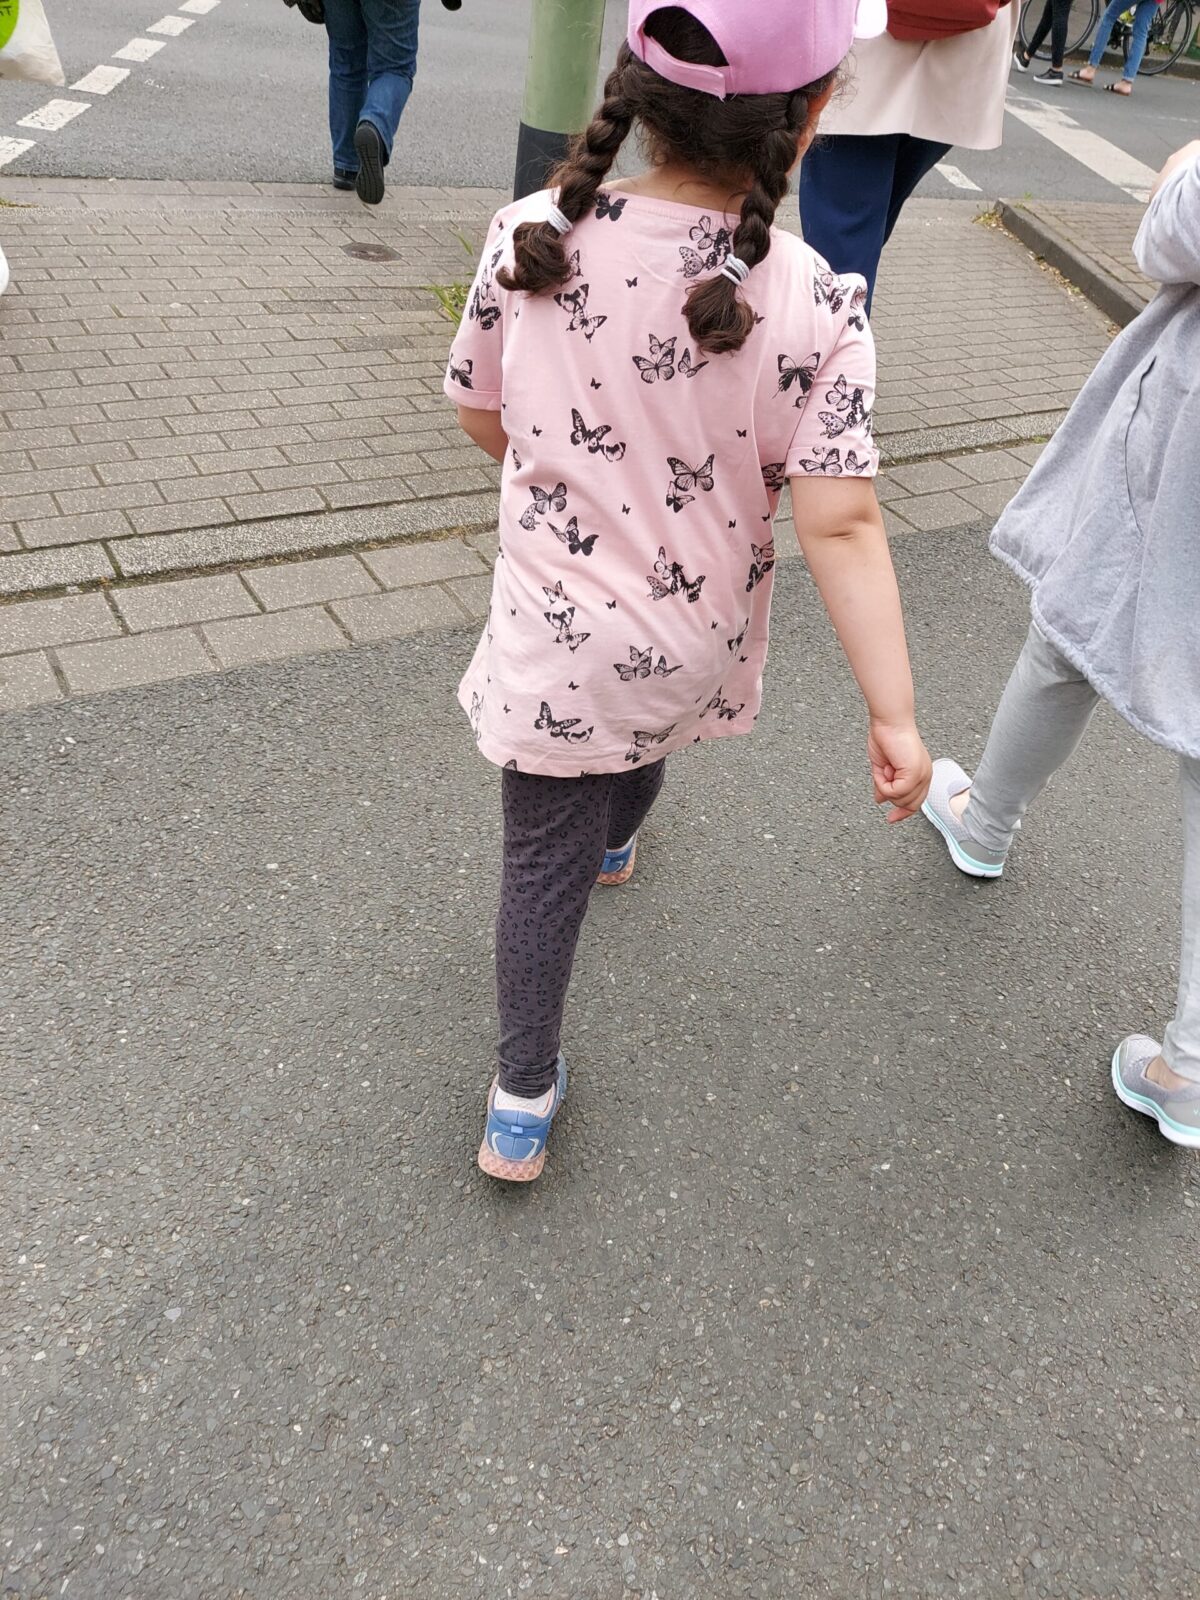 Beispiel-Foto zum Thema #cityzoo.  Ein Kind in Rückenansicht an einer Straßenkreuzung. Das Kind trägt ein rosafarbenes T-Shirt mit Schmetterlingen., blaue Schuhe, eine rosafarbenen Basecap. Die dunklen Haare sind zu zwei Zöpfen geflochten. 